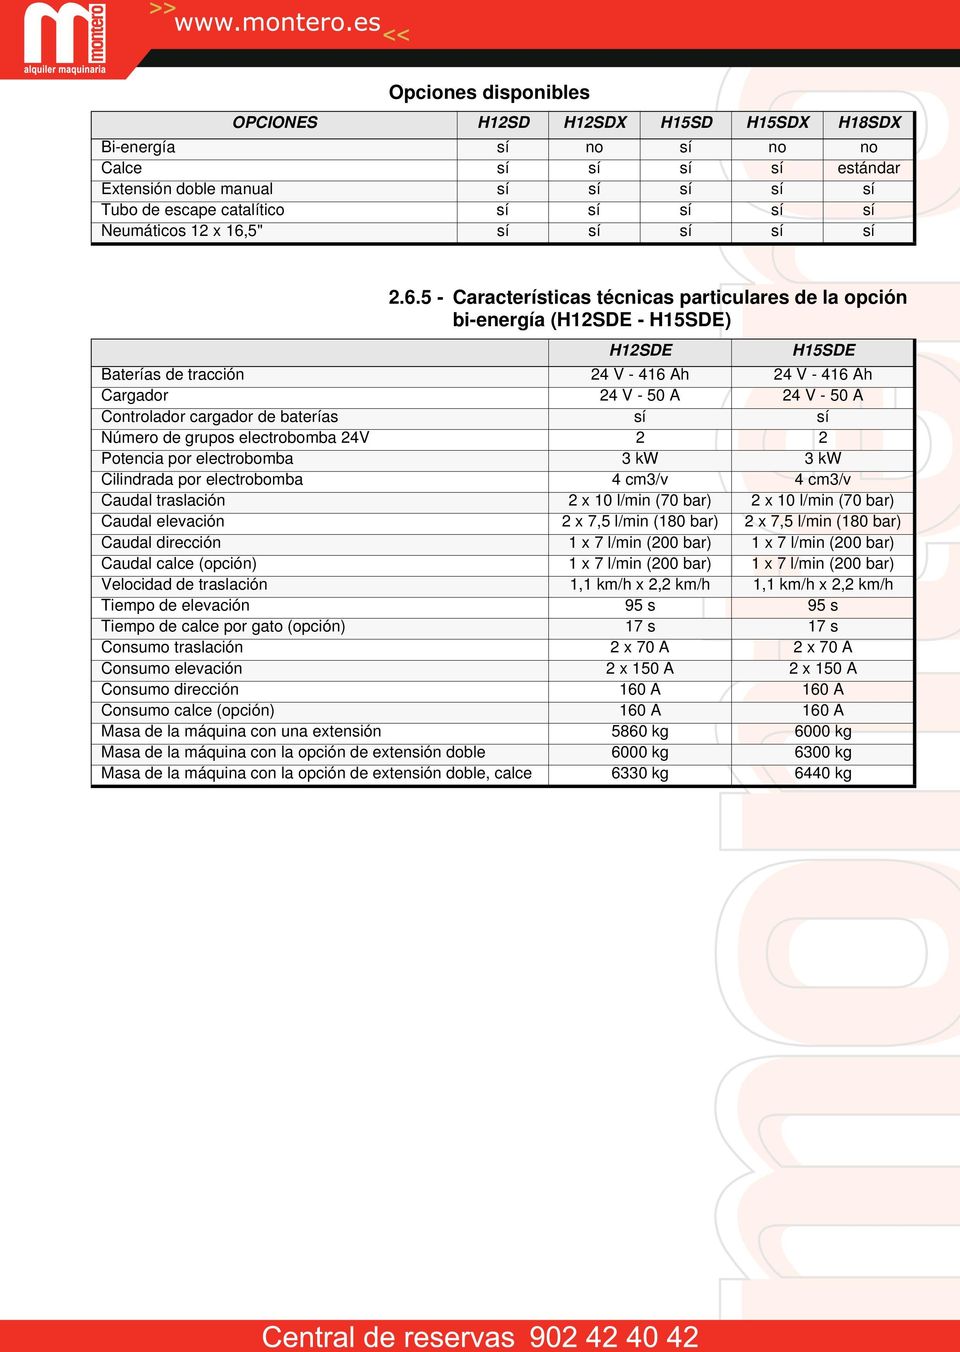 5 - Características técnicas particulares de la opción bi-energía (H12SDE - H15SDE) H12SDE H15SDE Baterías de tracción 24 V - 416 Ah 24 V - 416 Ah Cargador 24 V - 50 A 24 V - 50 A Controlador